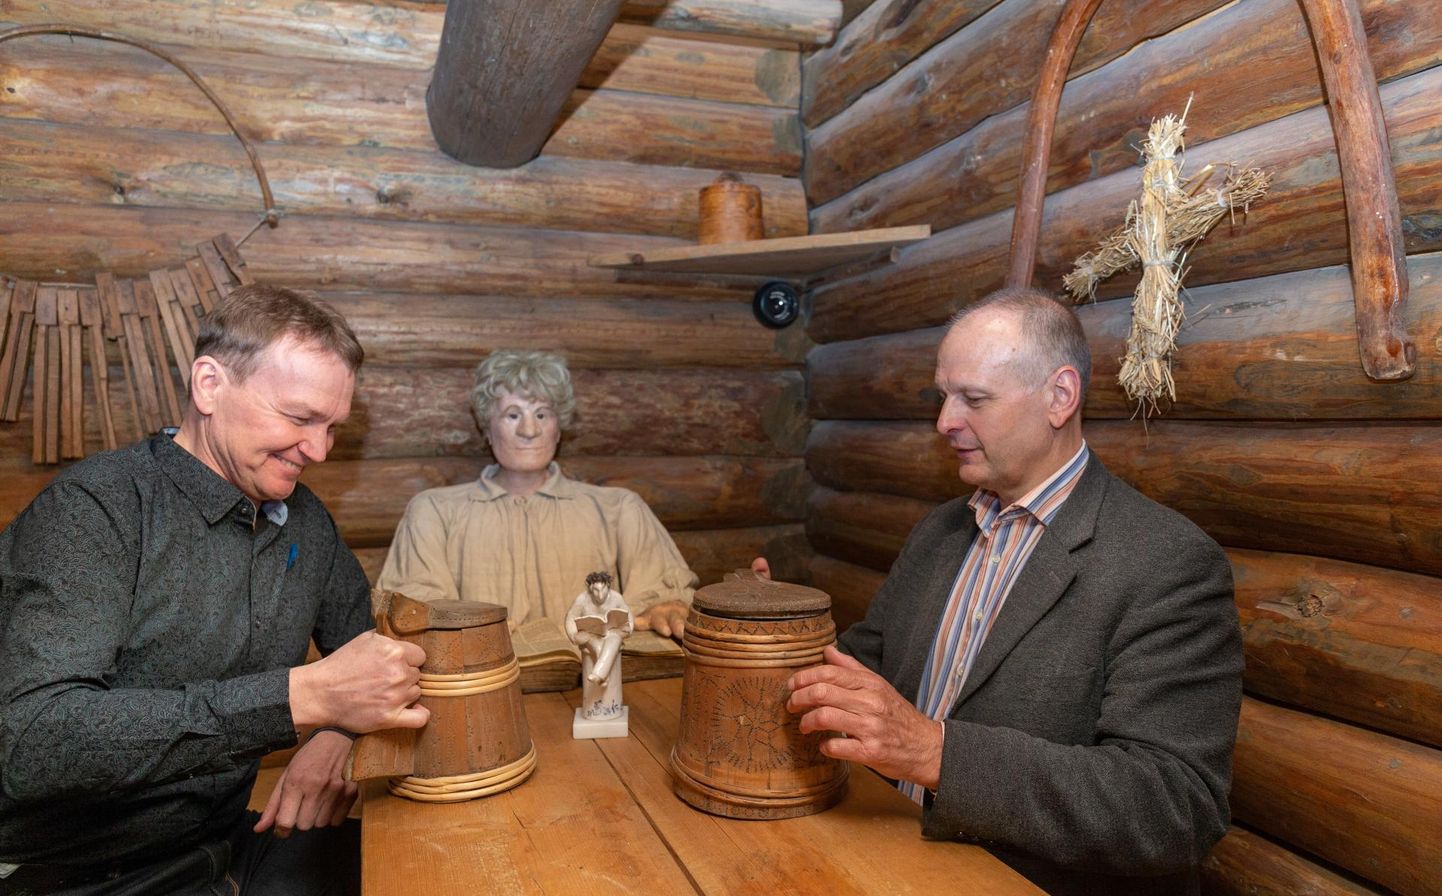 Viljandi abilinnapea Kalvi Märtin (paremal) andis "Lehelugeja" kuju muuseumi direktorile Jaak Pihlakule üle muuseumi talukambriks kujundatud ruumis. Laua otsas tunnistab toimuvat mannekeen Evald.